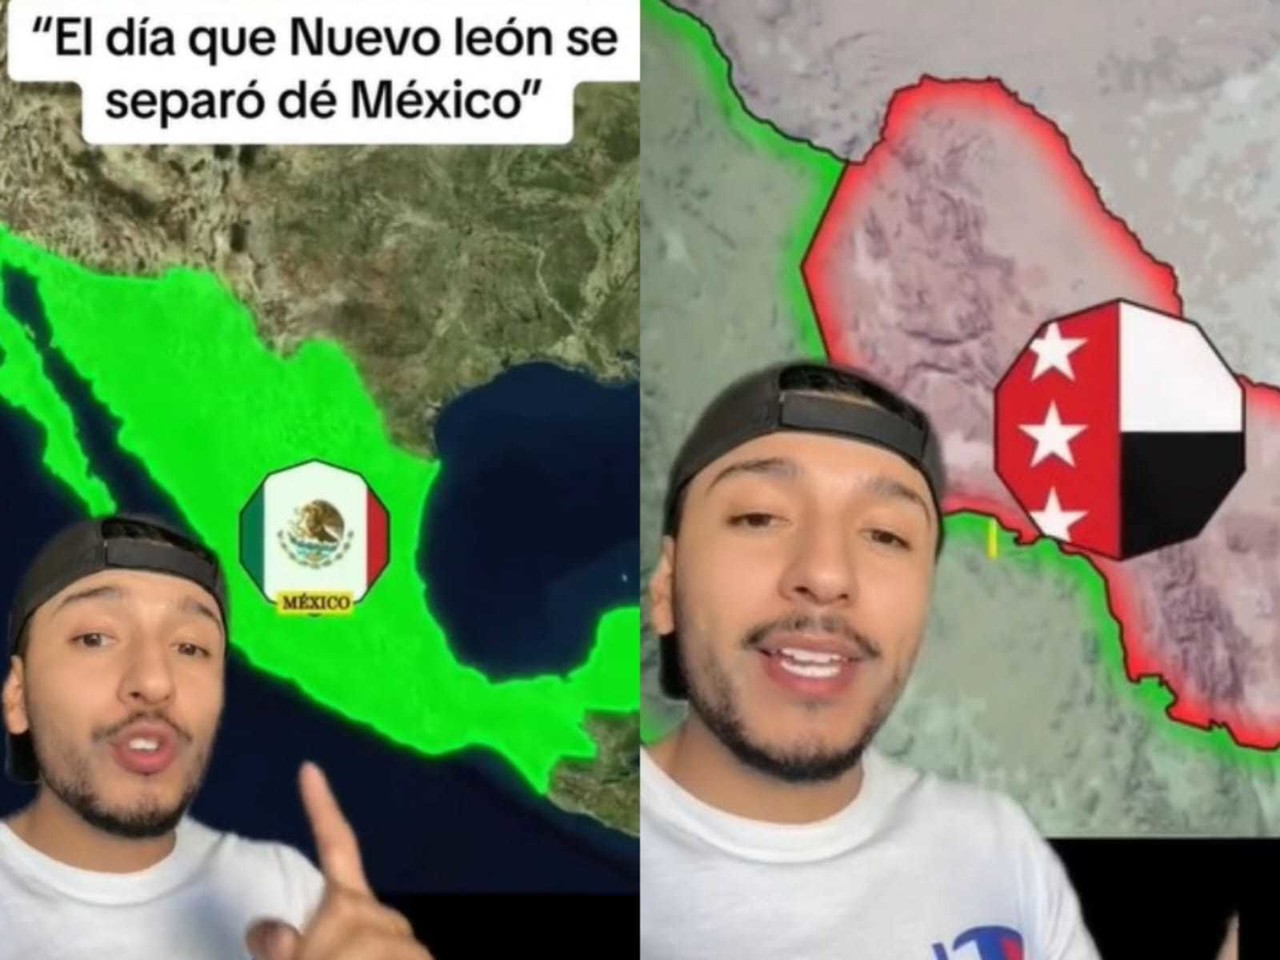 Tiktoker recuerda el intento de independencia de Nuevo León